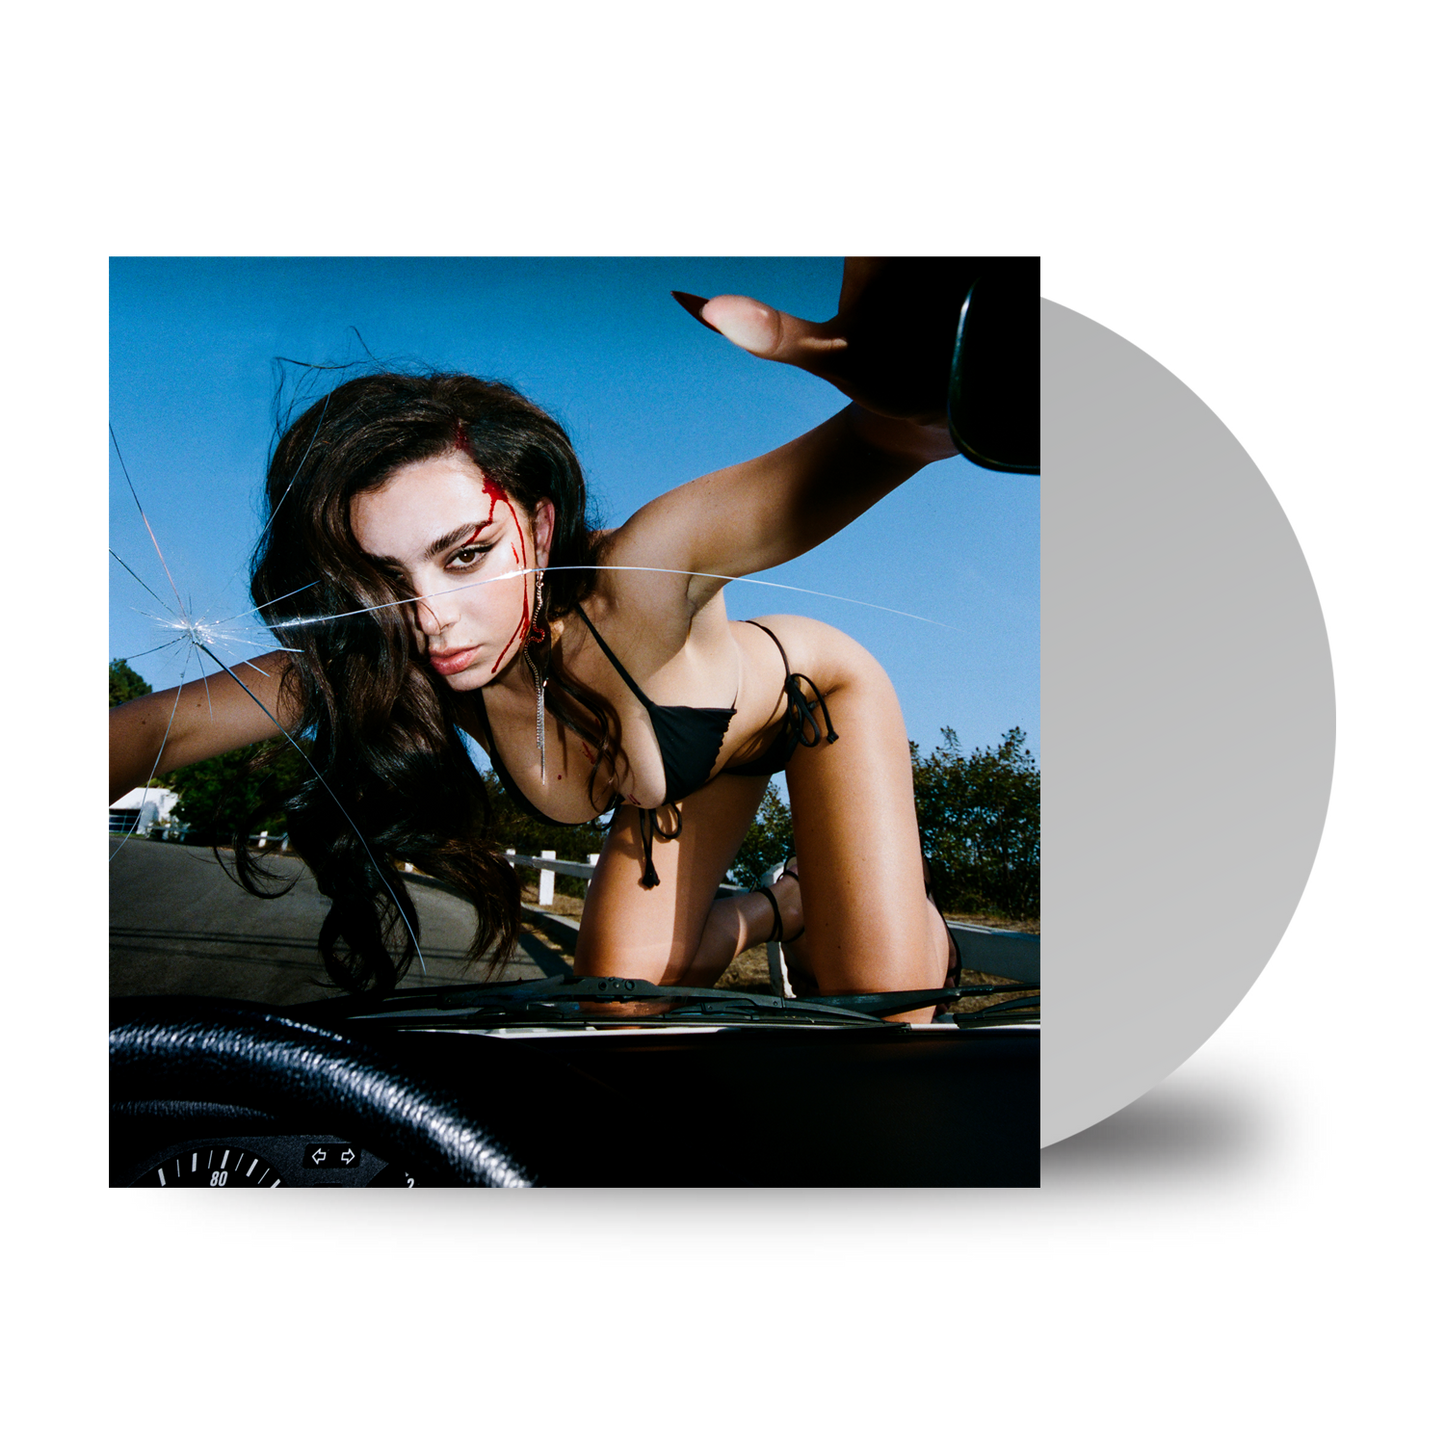 Charli XCX 'Crash' LP